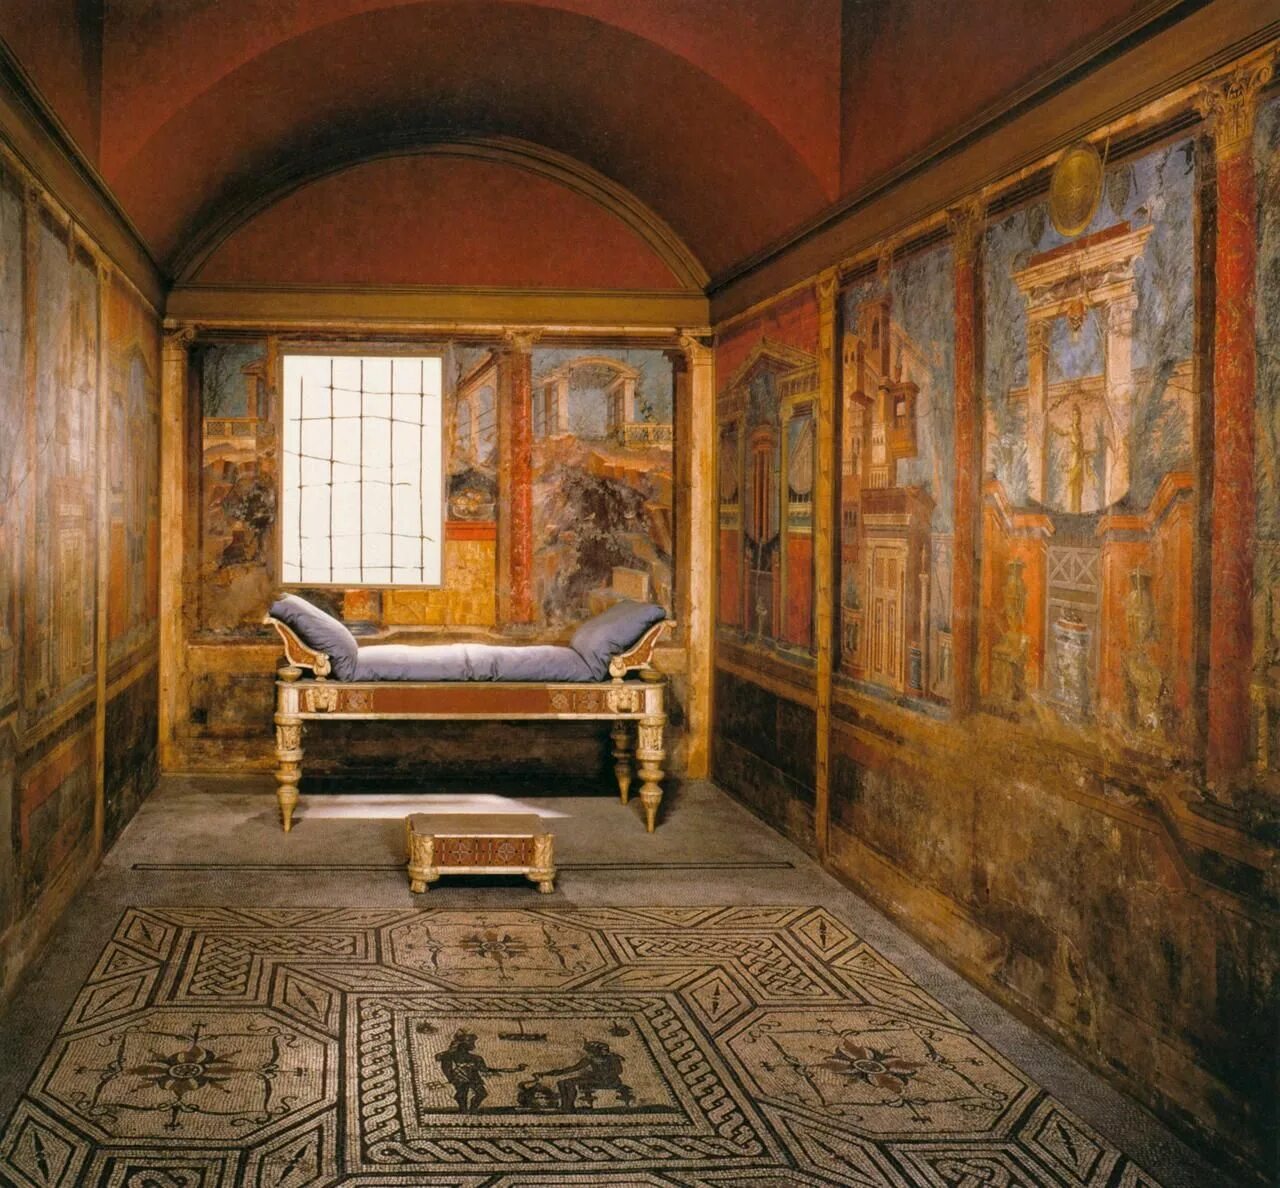 Помещение античного. Вилла в Боскореале древний Рим. Вилла Боскореале фрески. Философ фреска вилла в Боскореале 1 век. Вилла в Боскореале фрески 3 помпейский стиль.